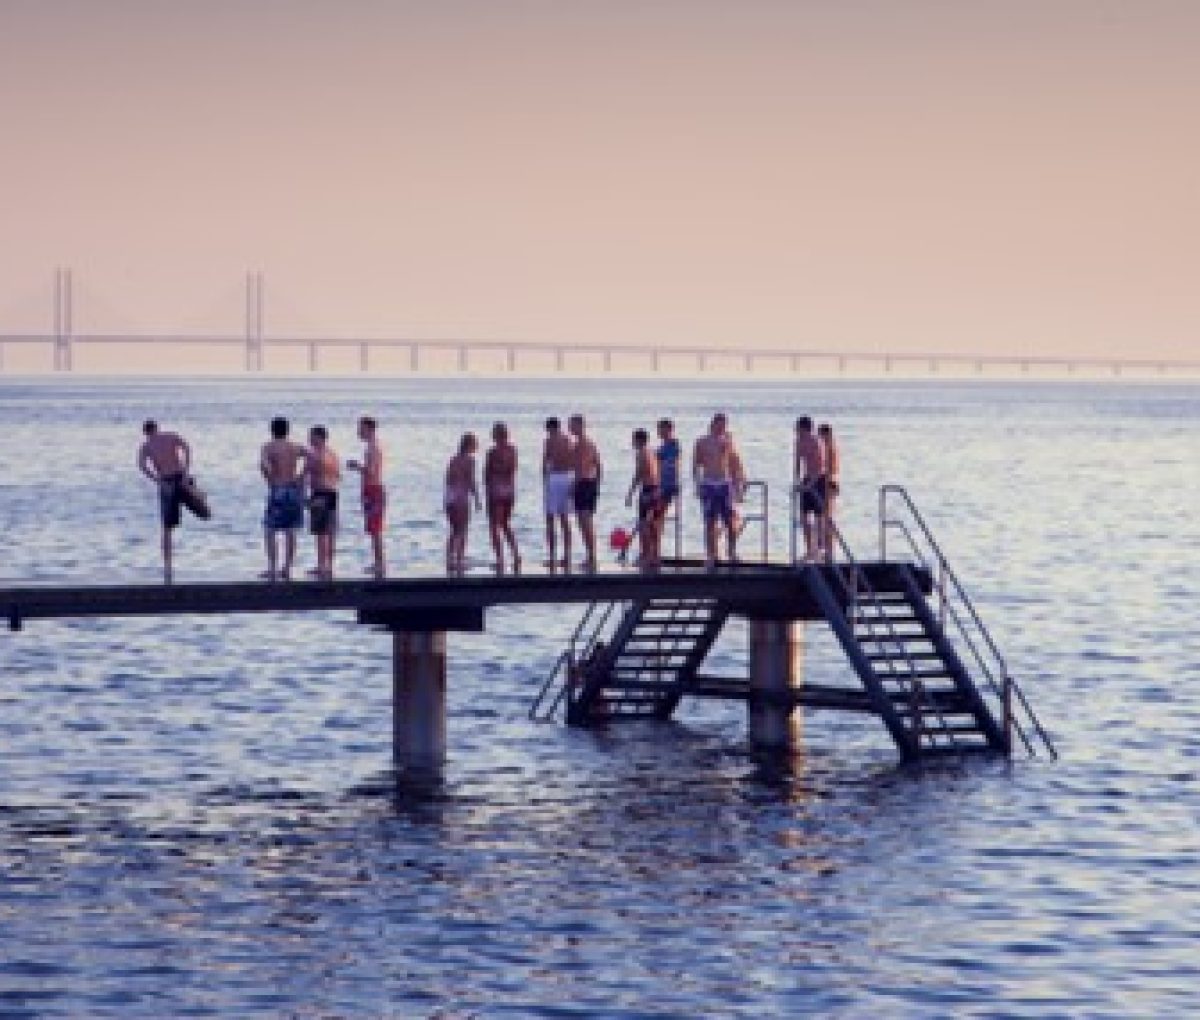 People on a pier in Västra Hamnen, Malmö, Sweden.